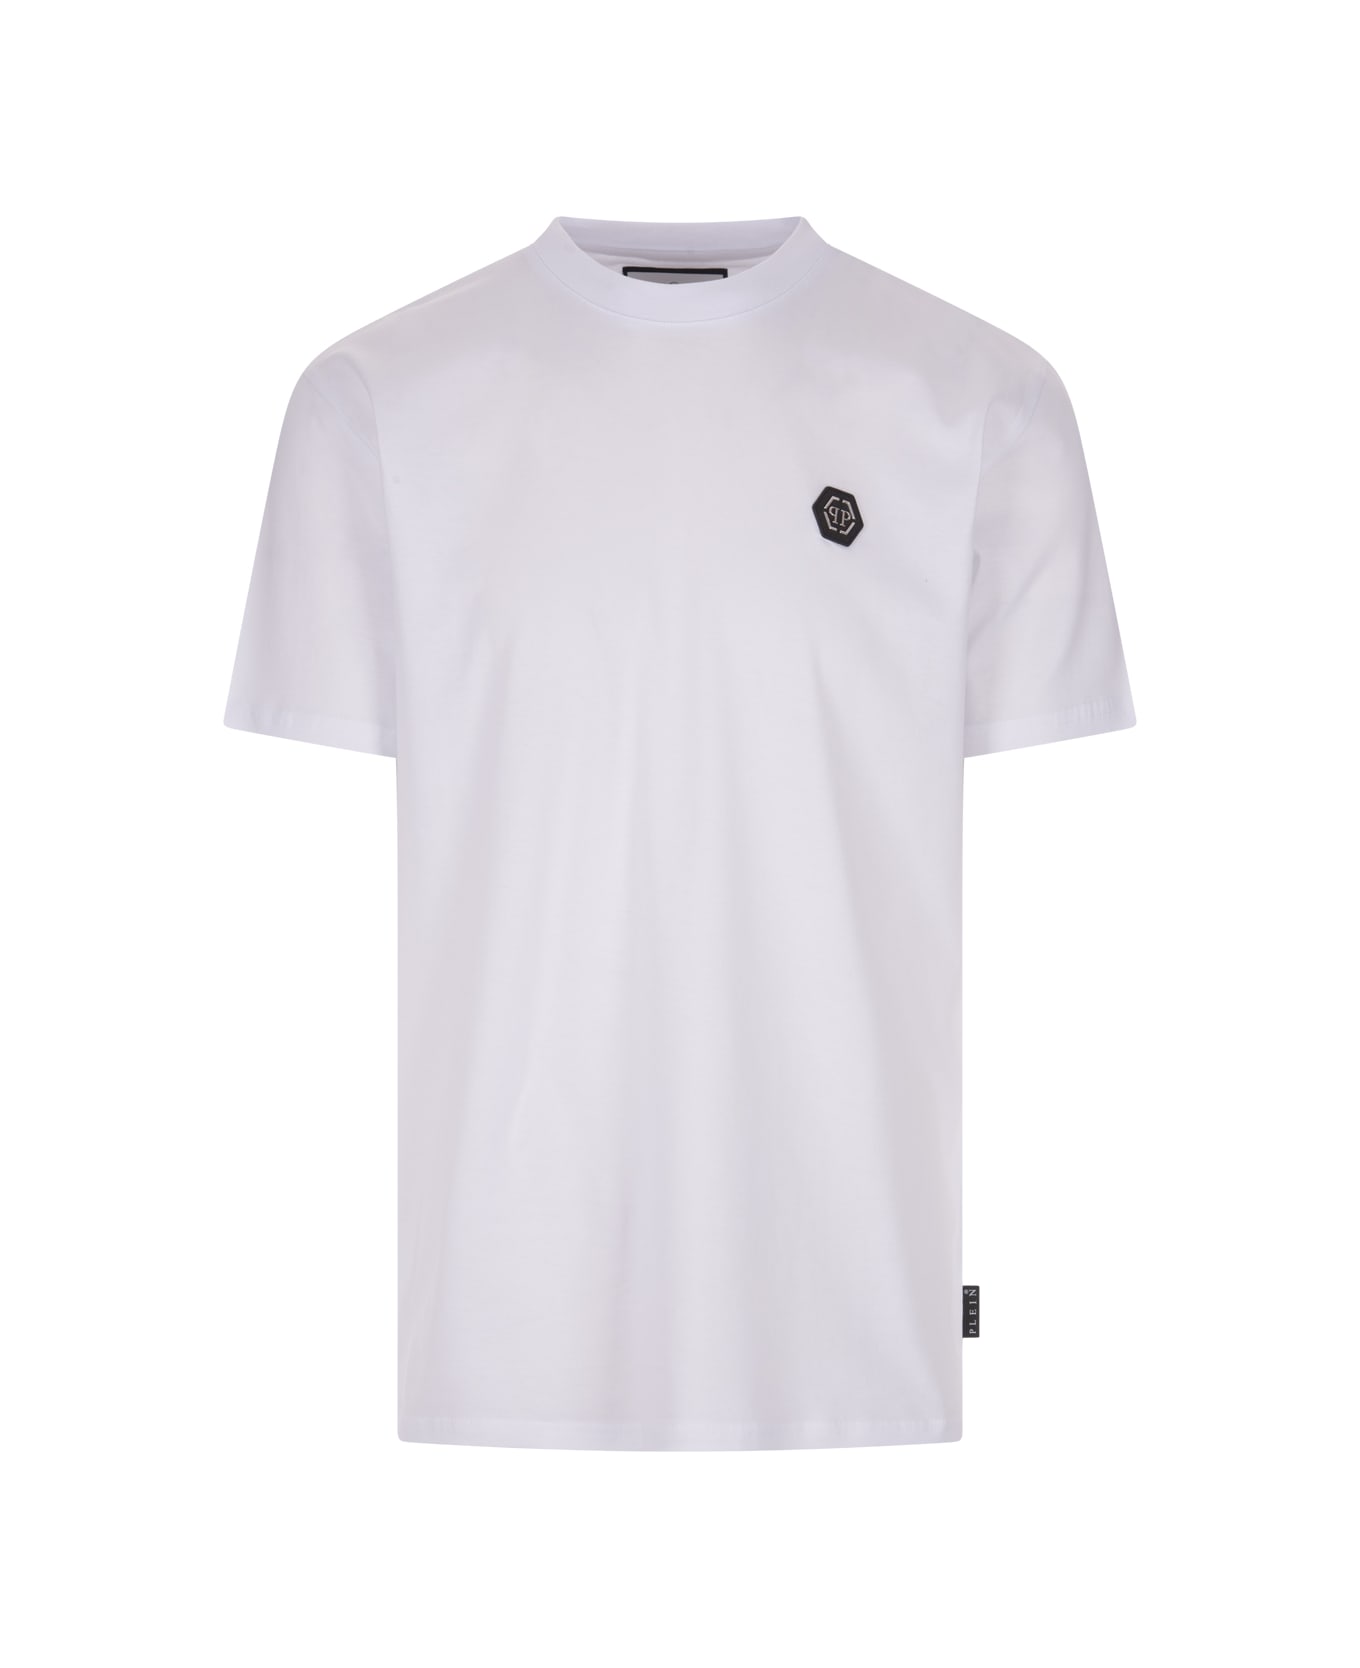 Philipp Plein White Hexagon T-shirt - White シャツ